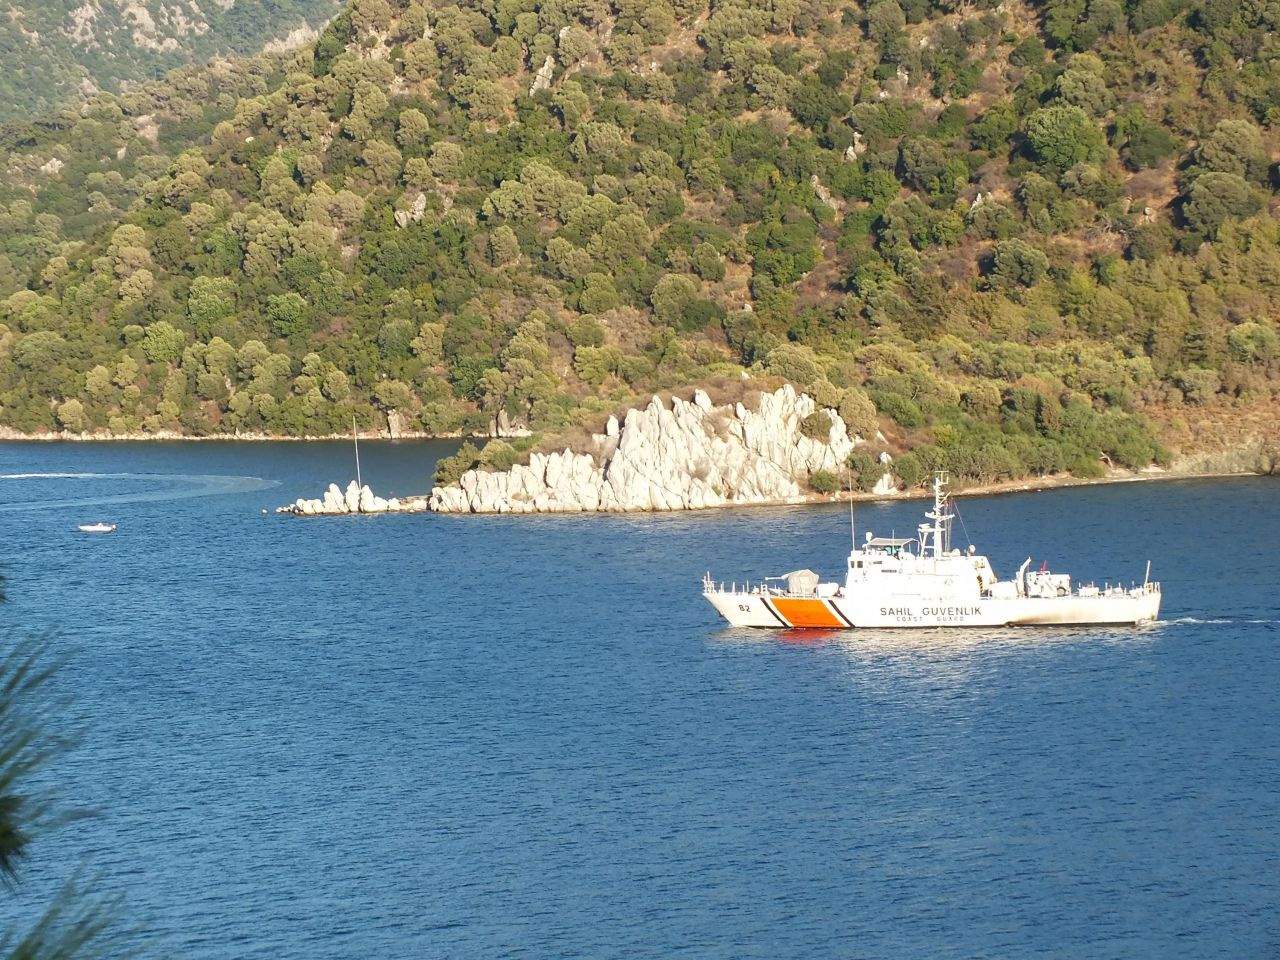 Yunan sahil güvenliği tekneye ateş açtı 3 yaralı